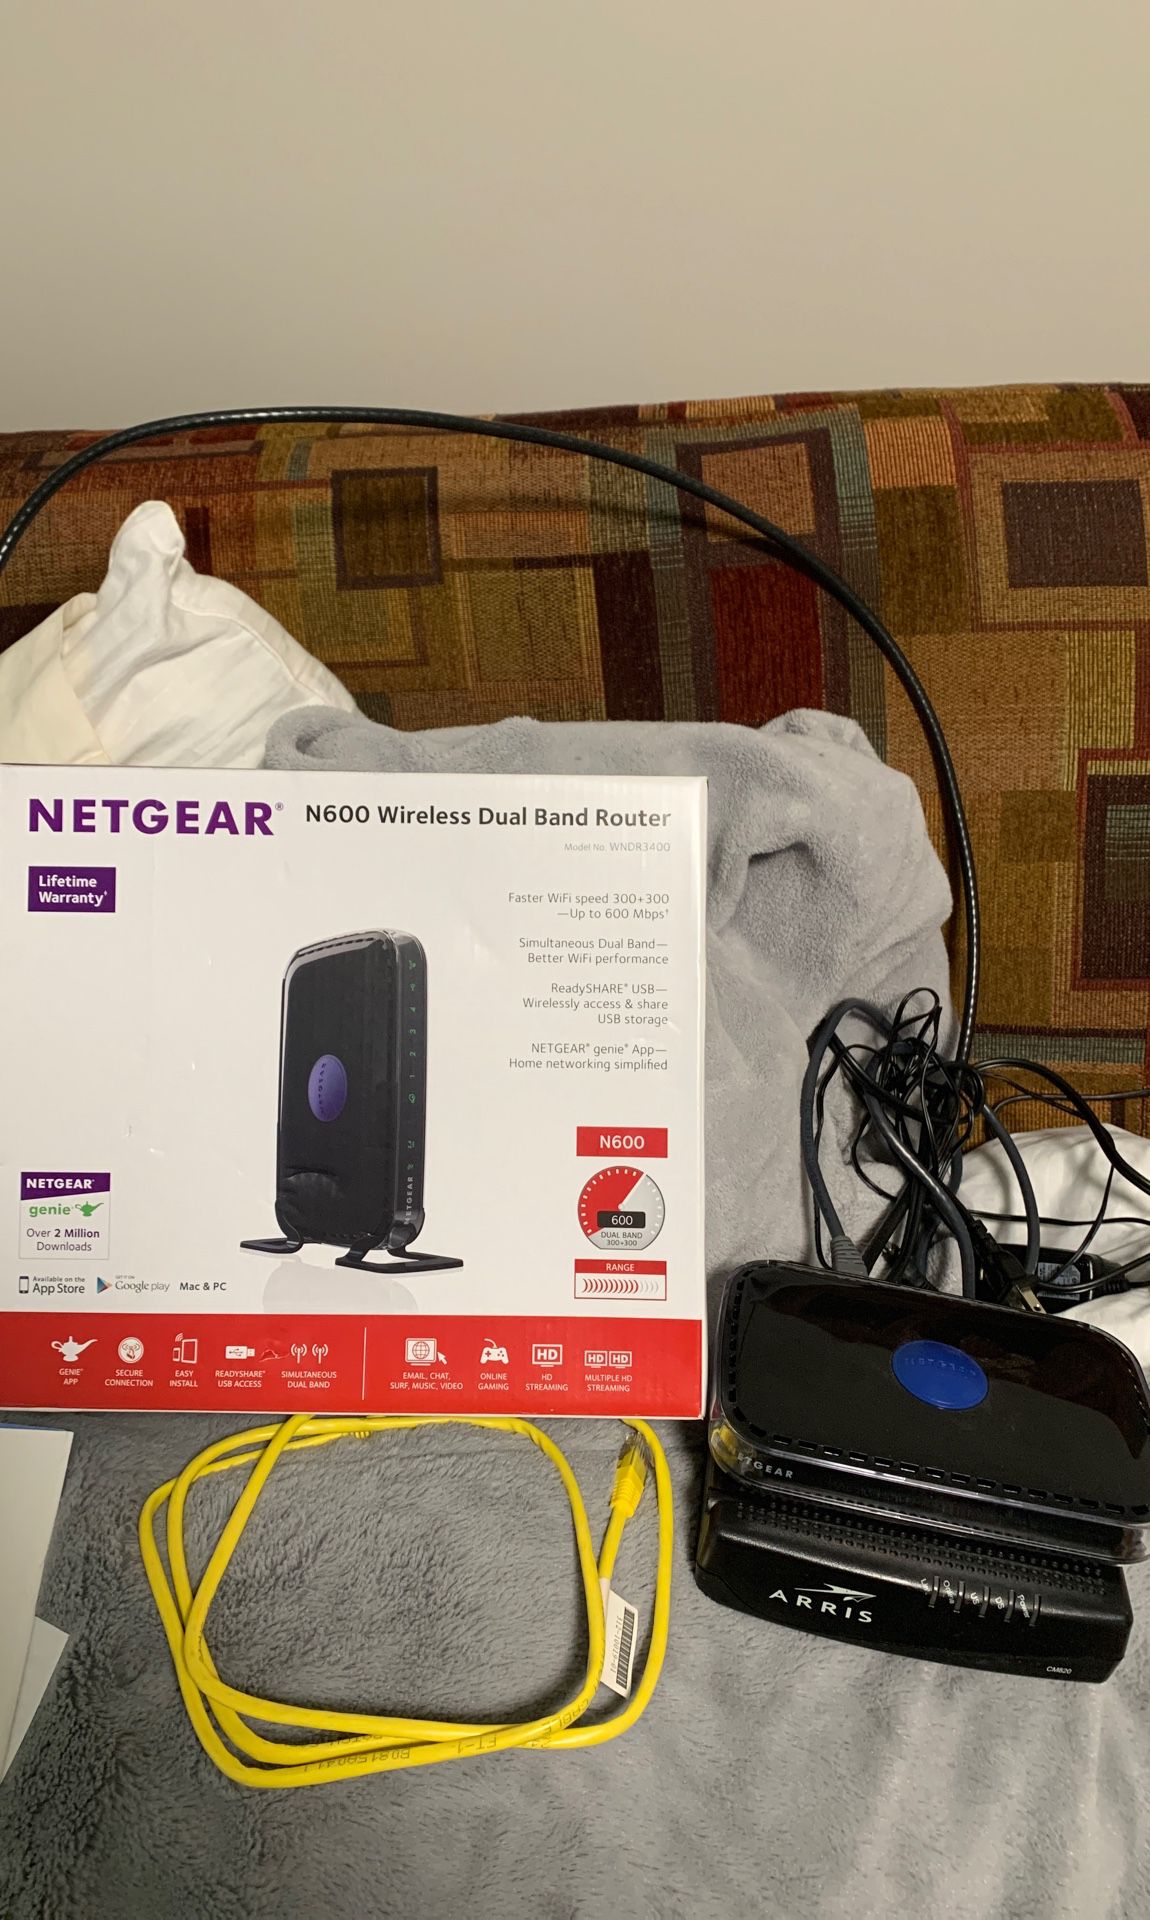 Netgear n600 wireless router and arris modem